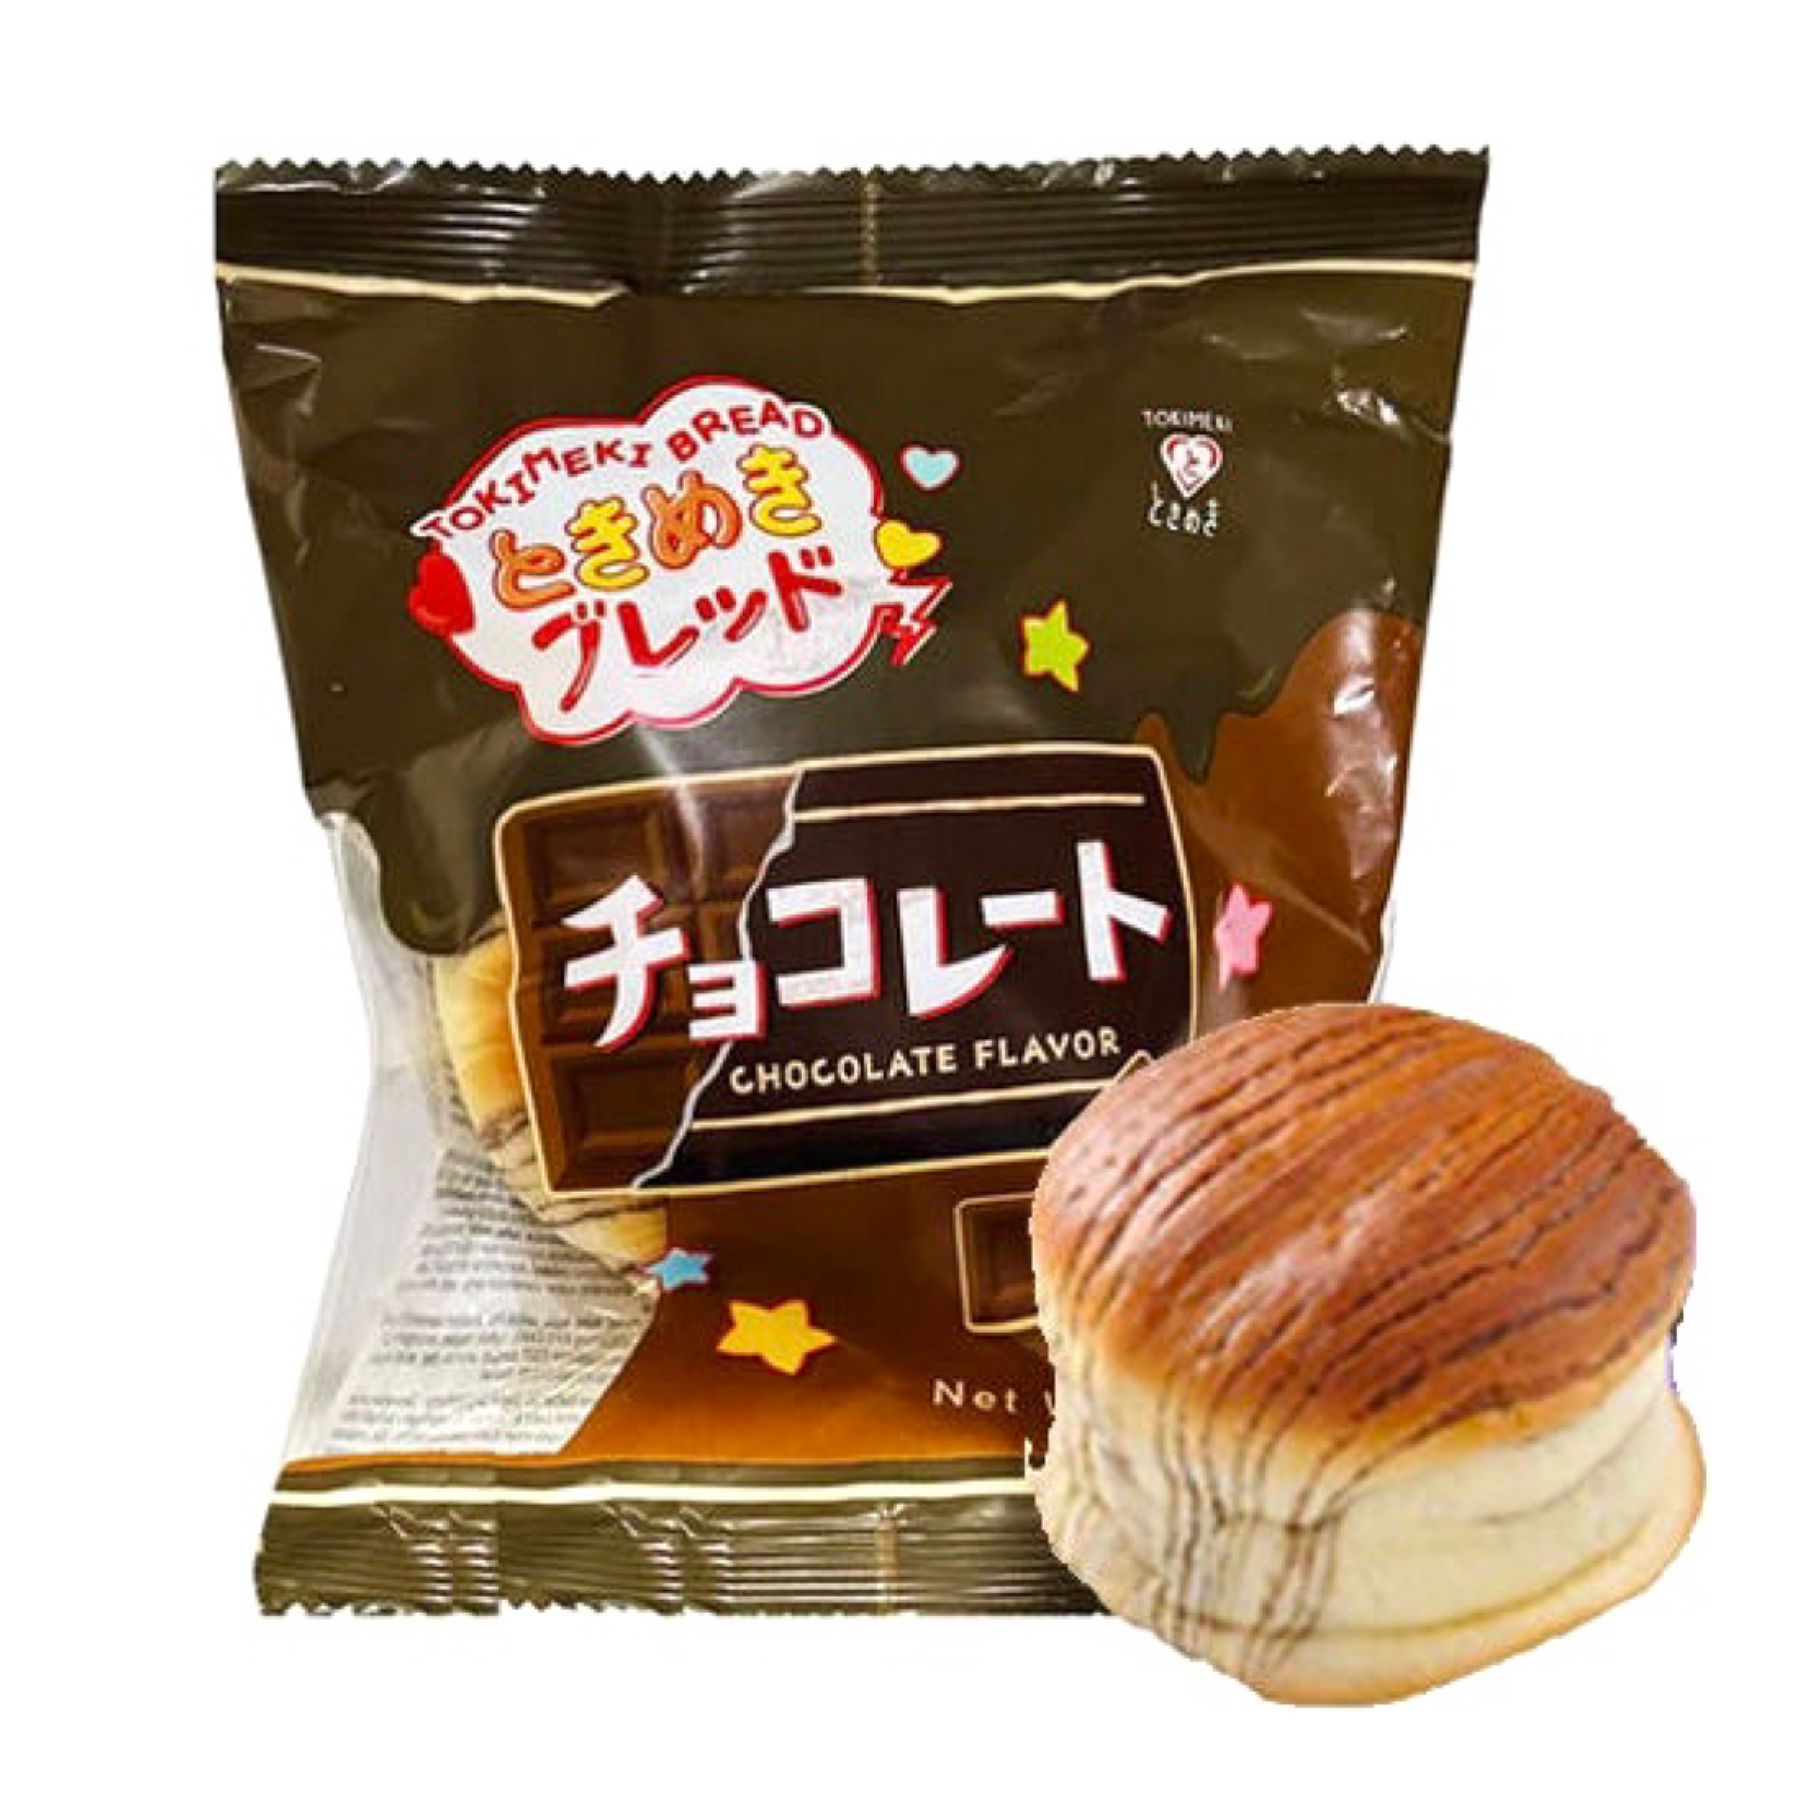 Tokimeki 초코빵 70g